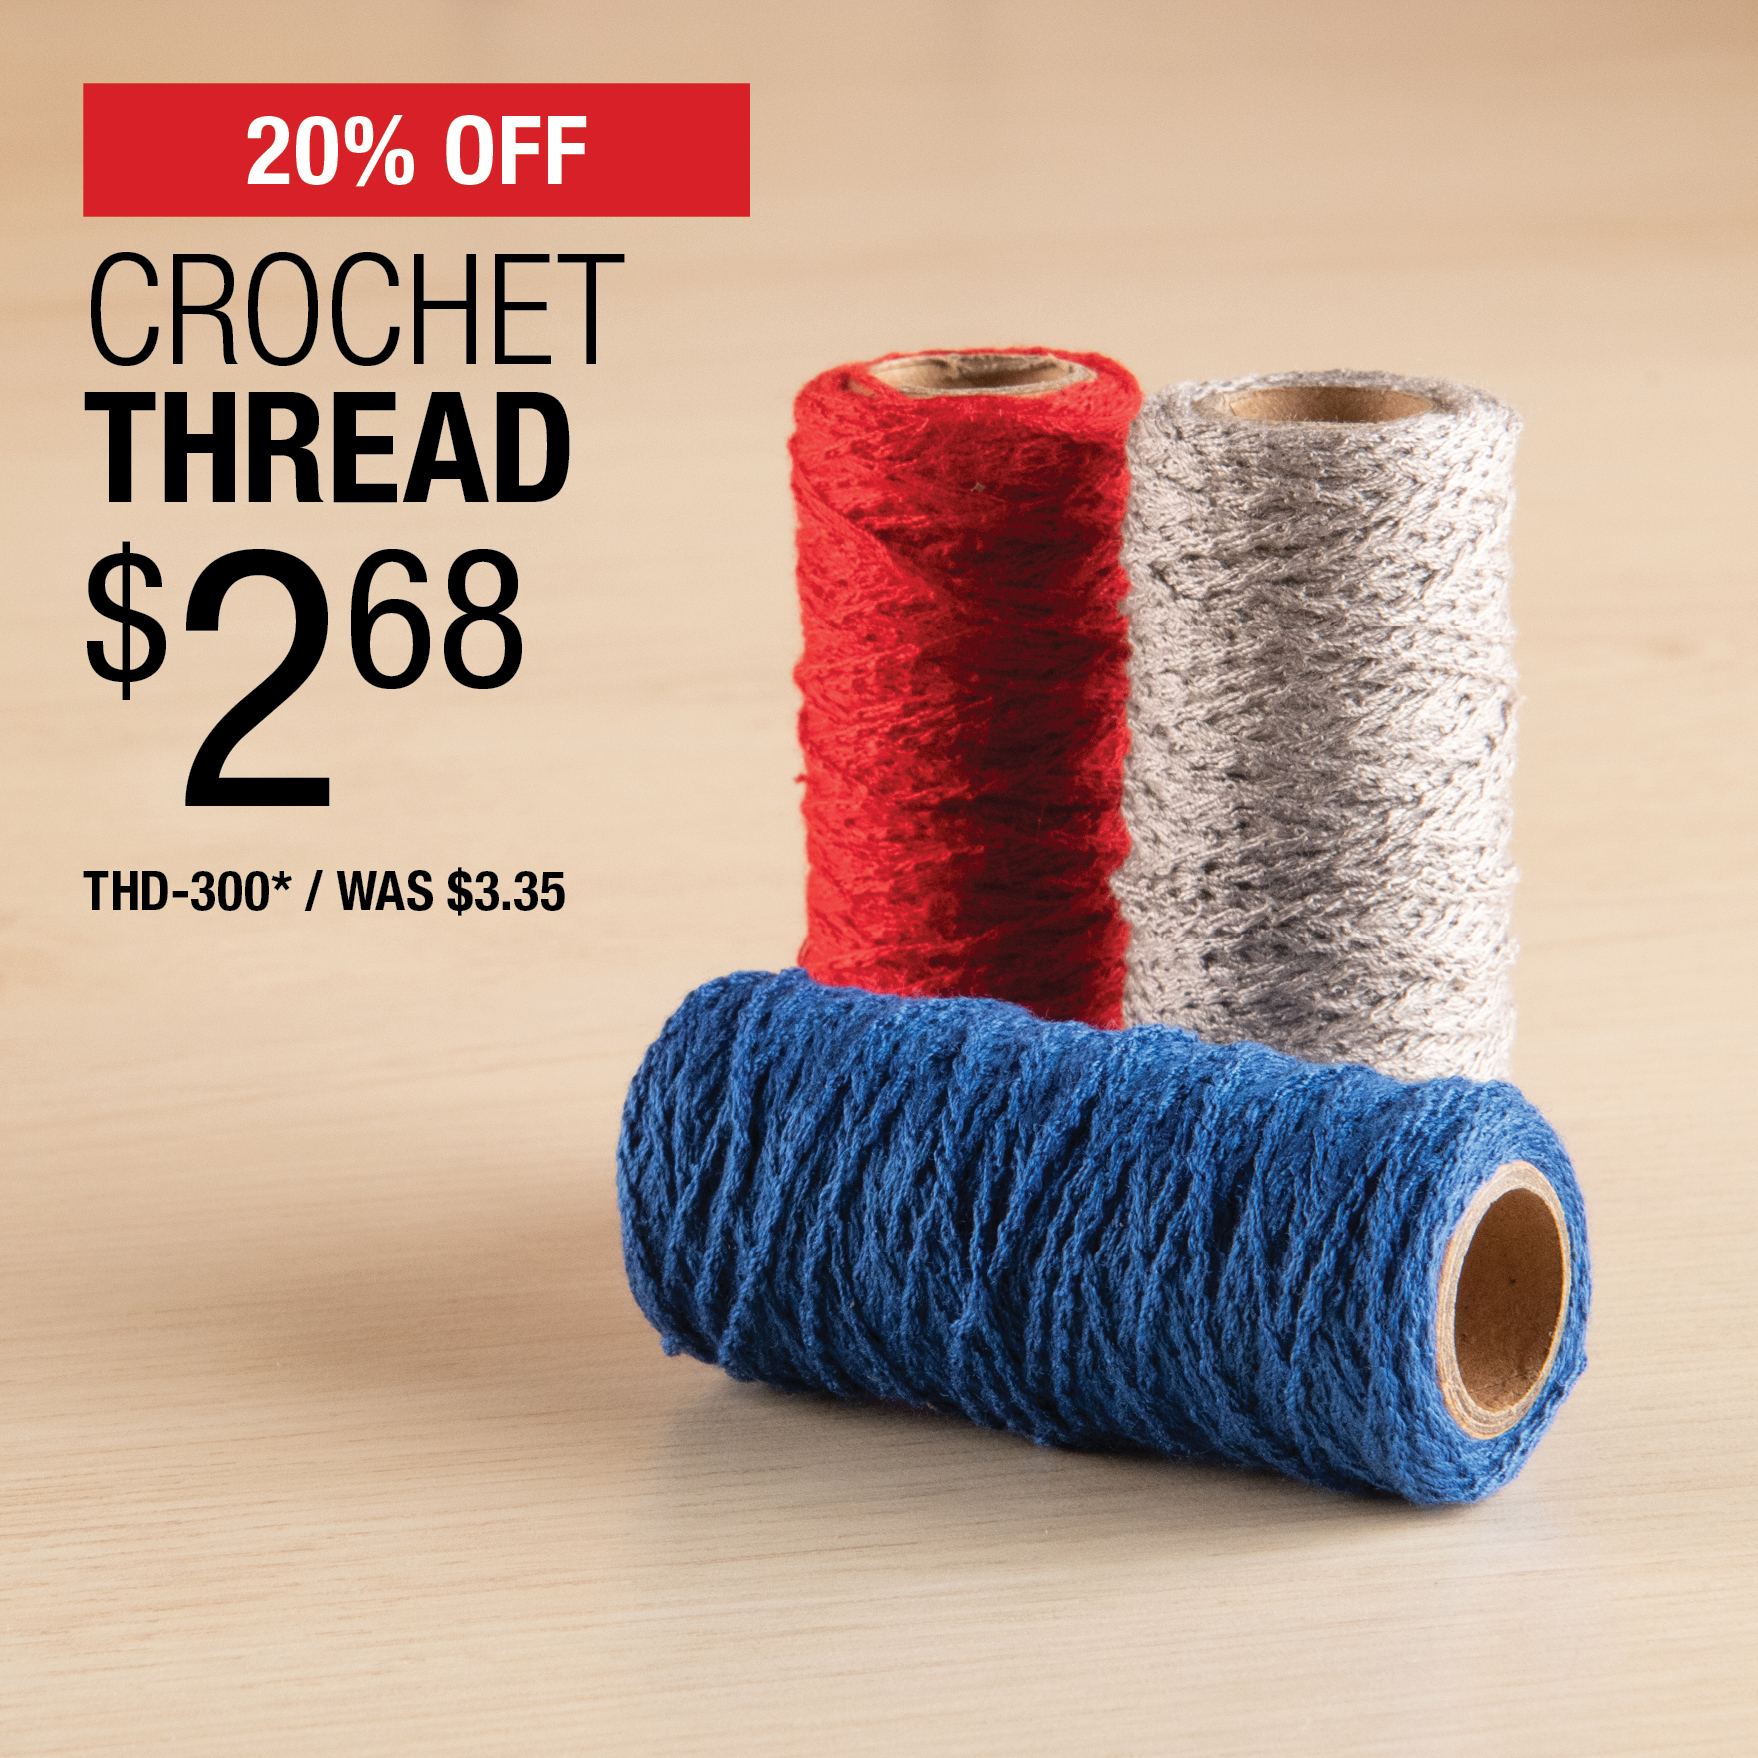 20% Off Crochet Thread $2.68 / THD-300* / Was $3.35.